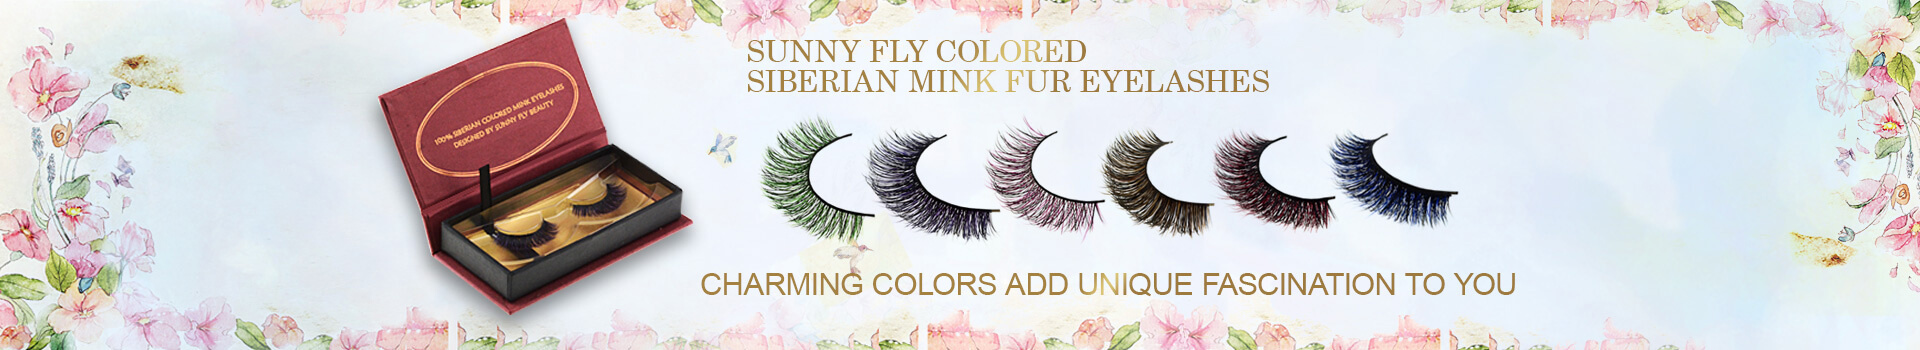 Farget Siberian Mink Fur Eyesashes MC50